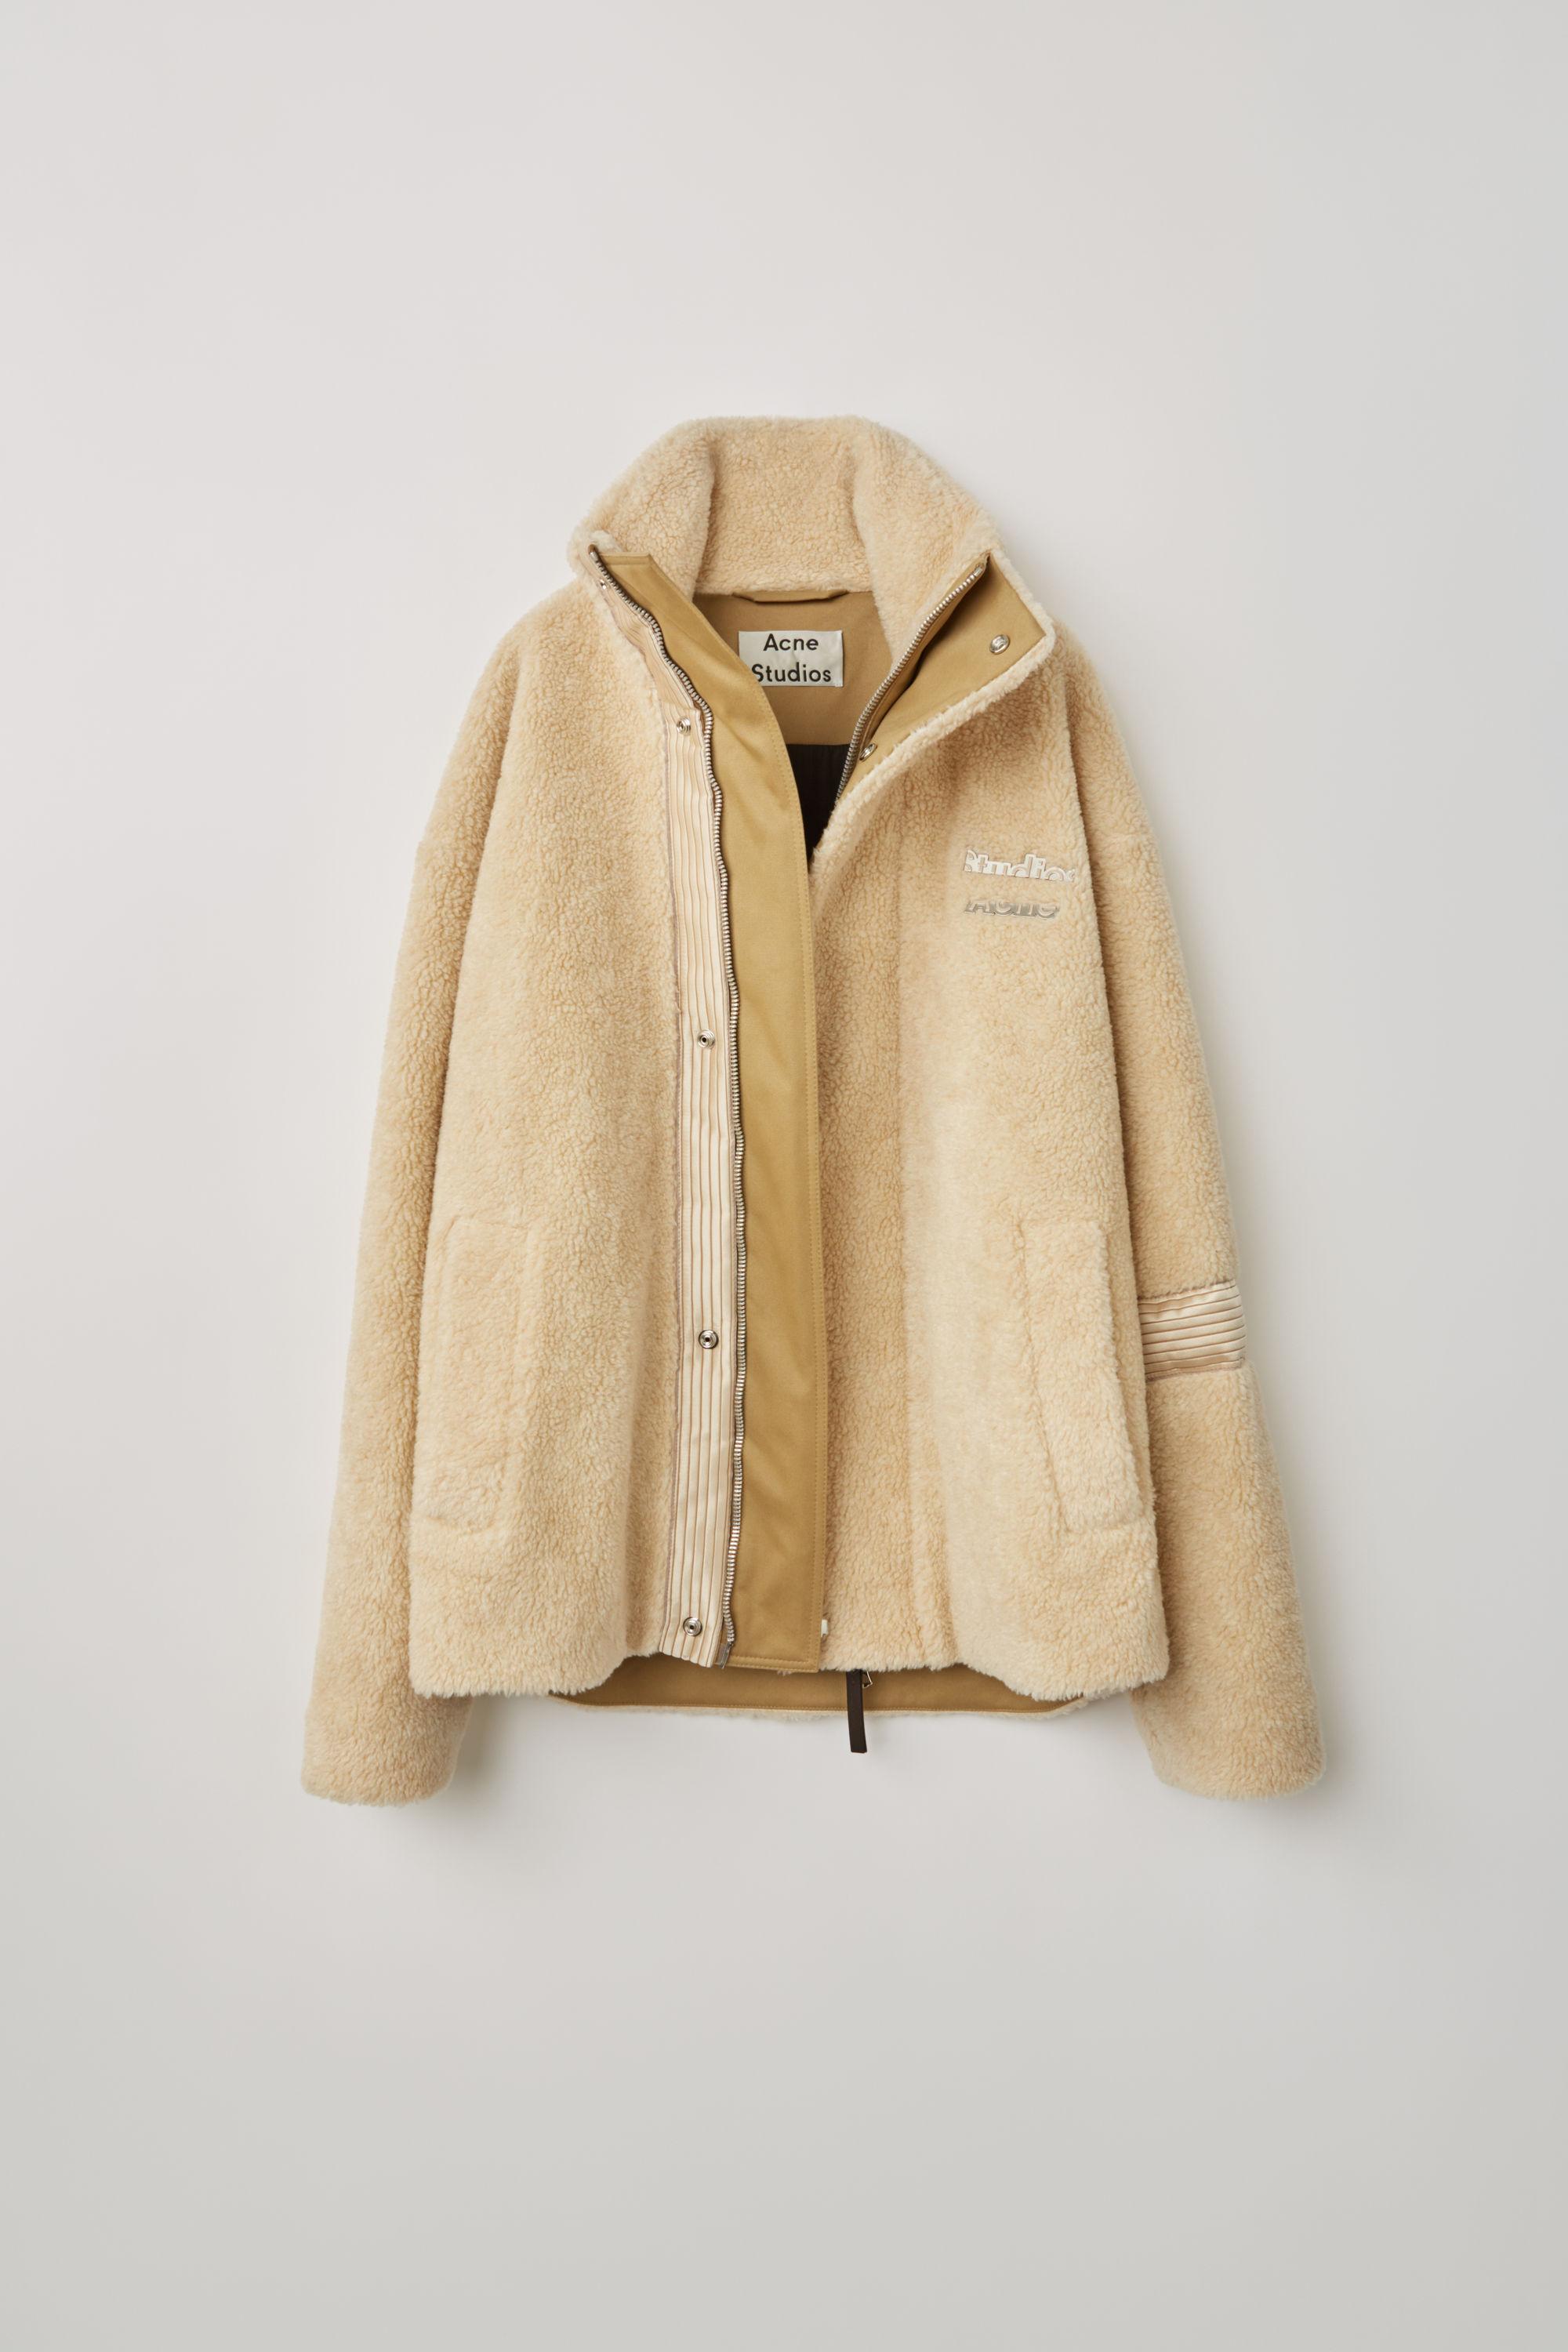 Acne Studios Fn-mn-outw000143 Ecru Beige Fleece Jacket in Natural for Men Lyst